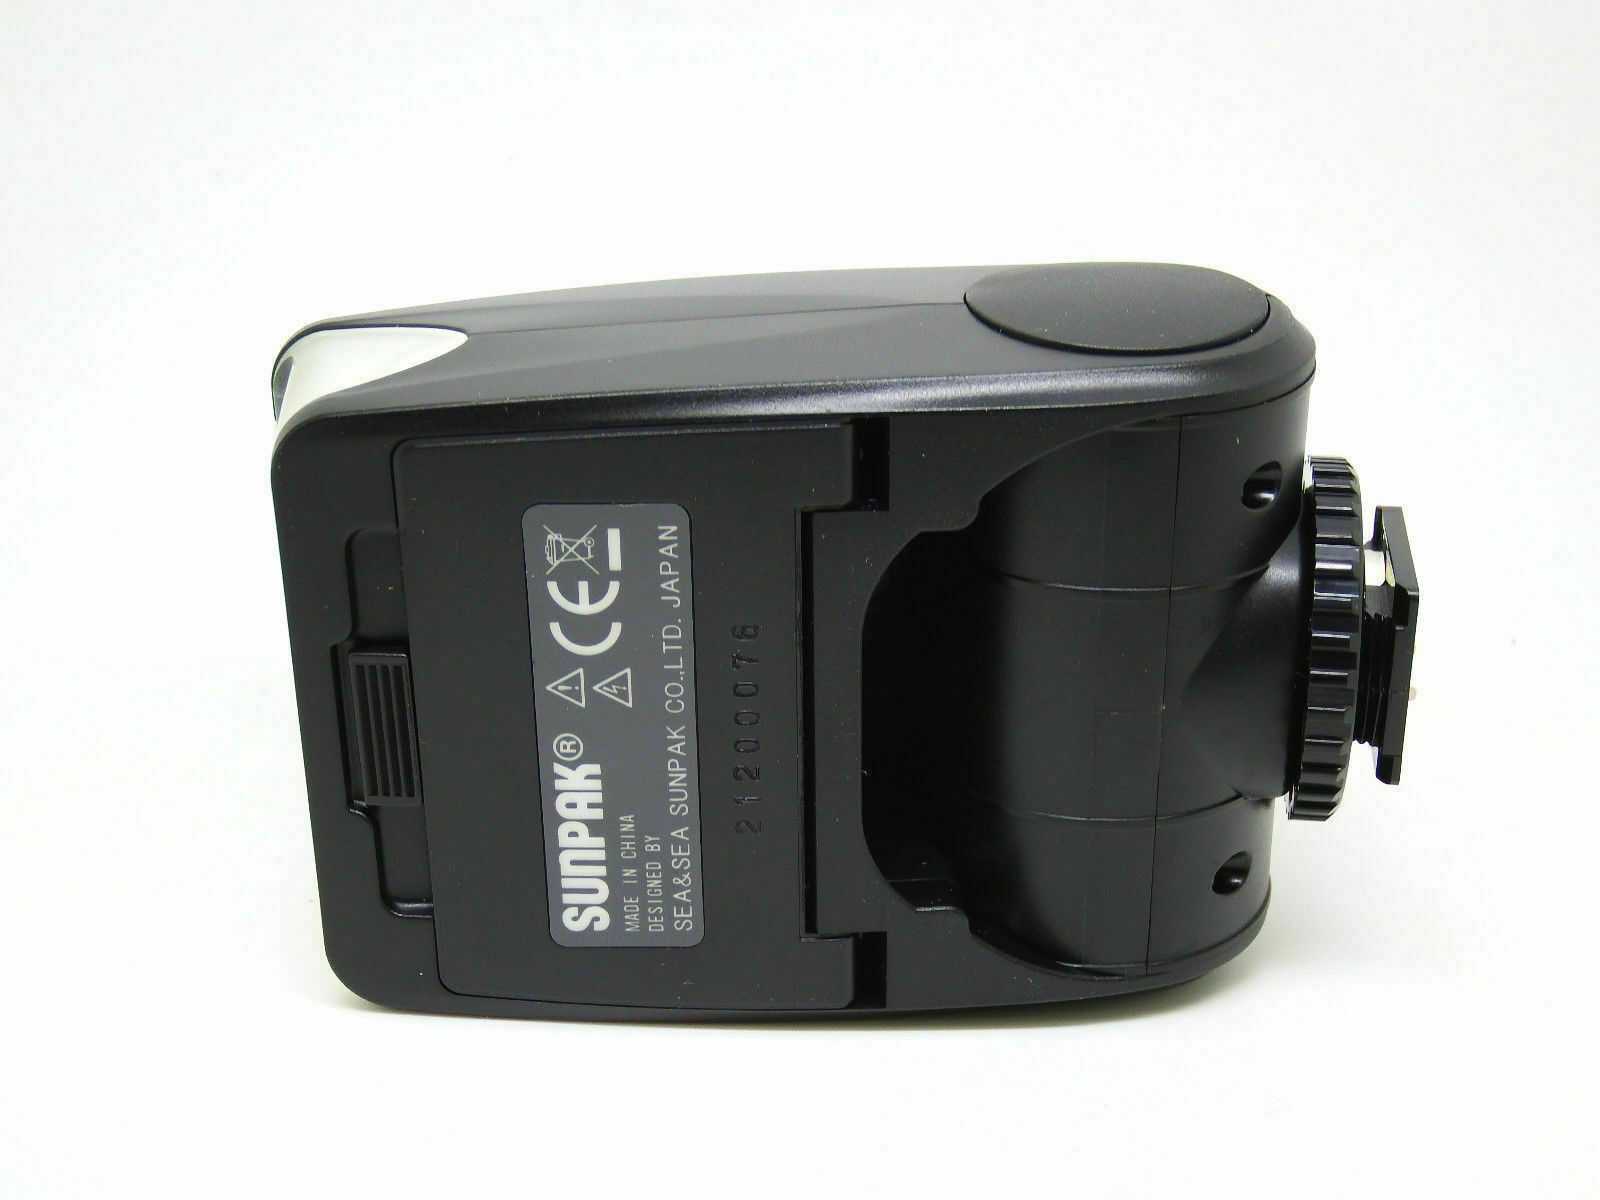 Фотовспышка Sunpak PZ40X for Nikon - подробные характеристики обзоры видео фото Цены в интернет-магазинах где можно купить фотовспышку Sunpak PZ40X for Nikon